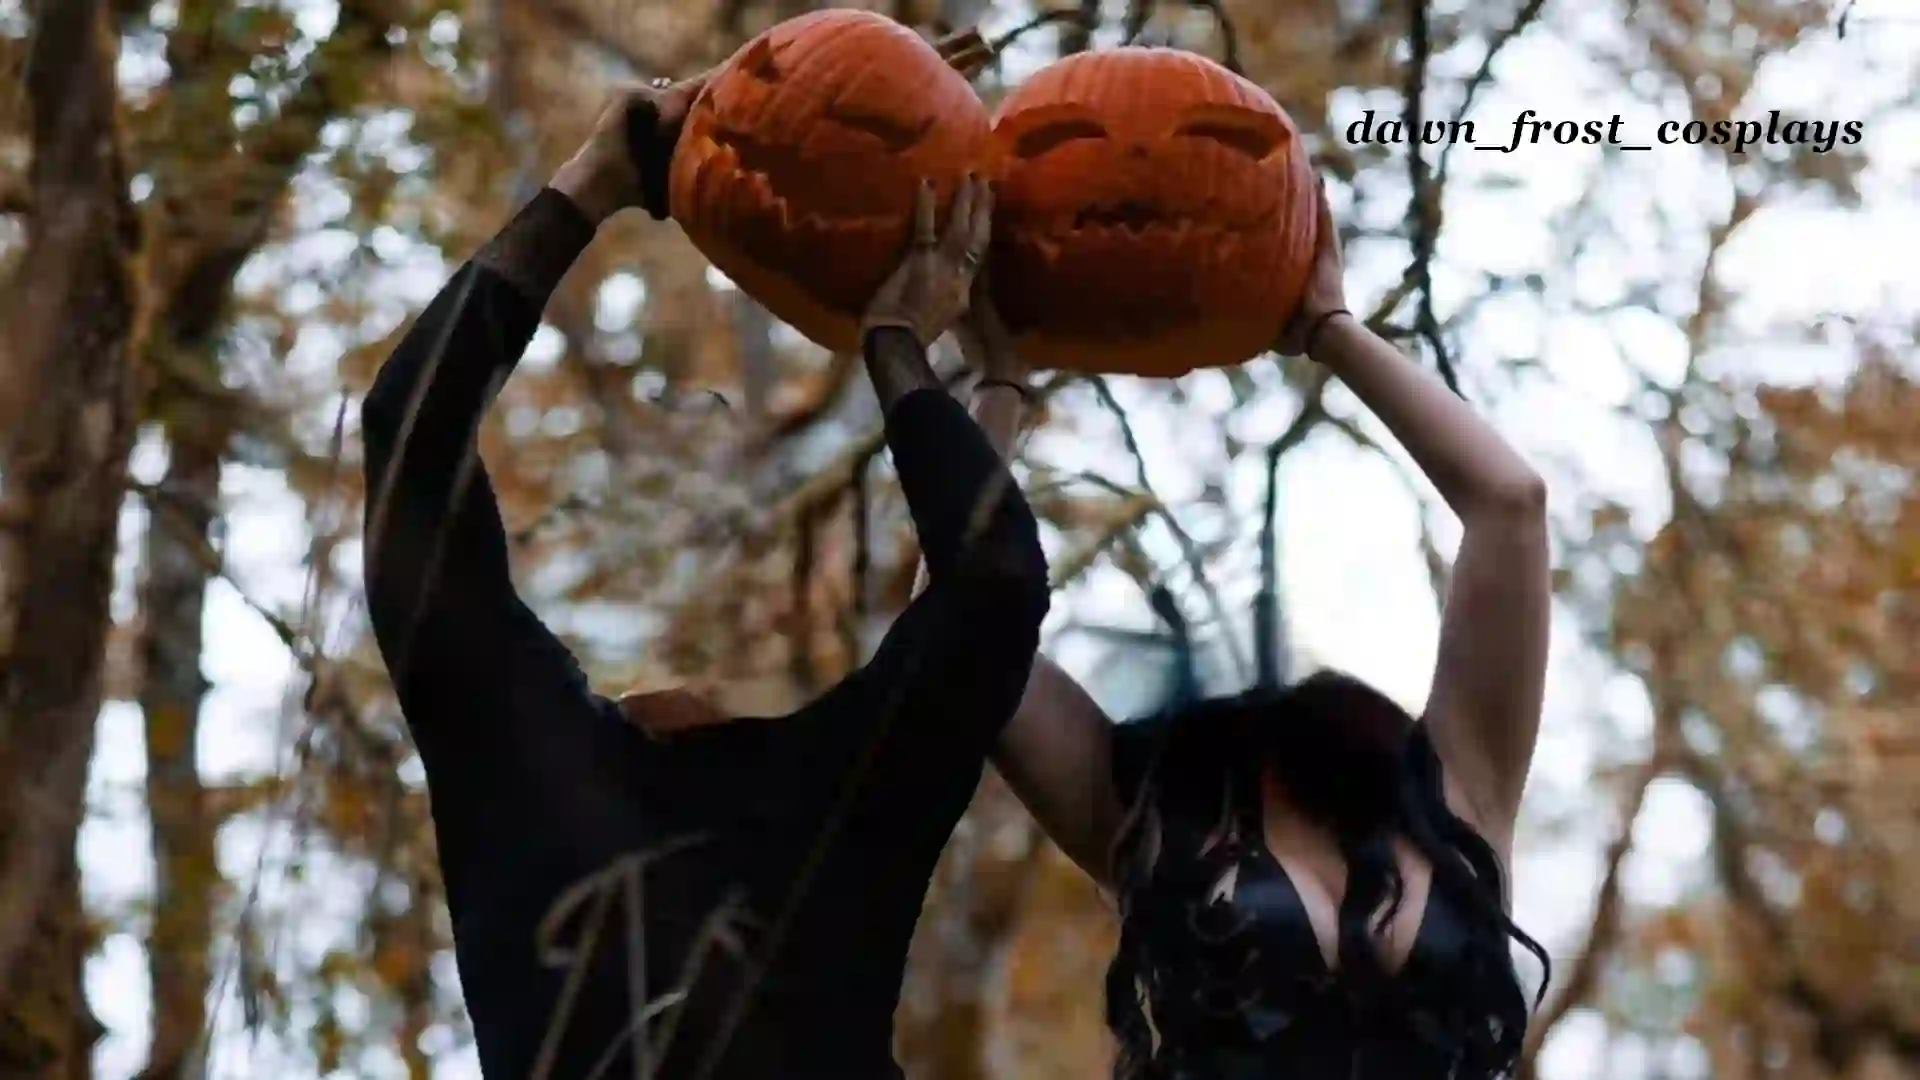 5 Principales Tendencias de TikTok inspiradas en Halloween de las que Deberías Participar